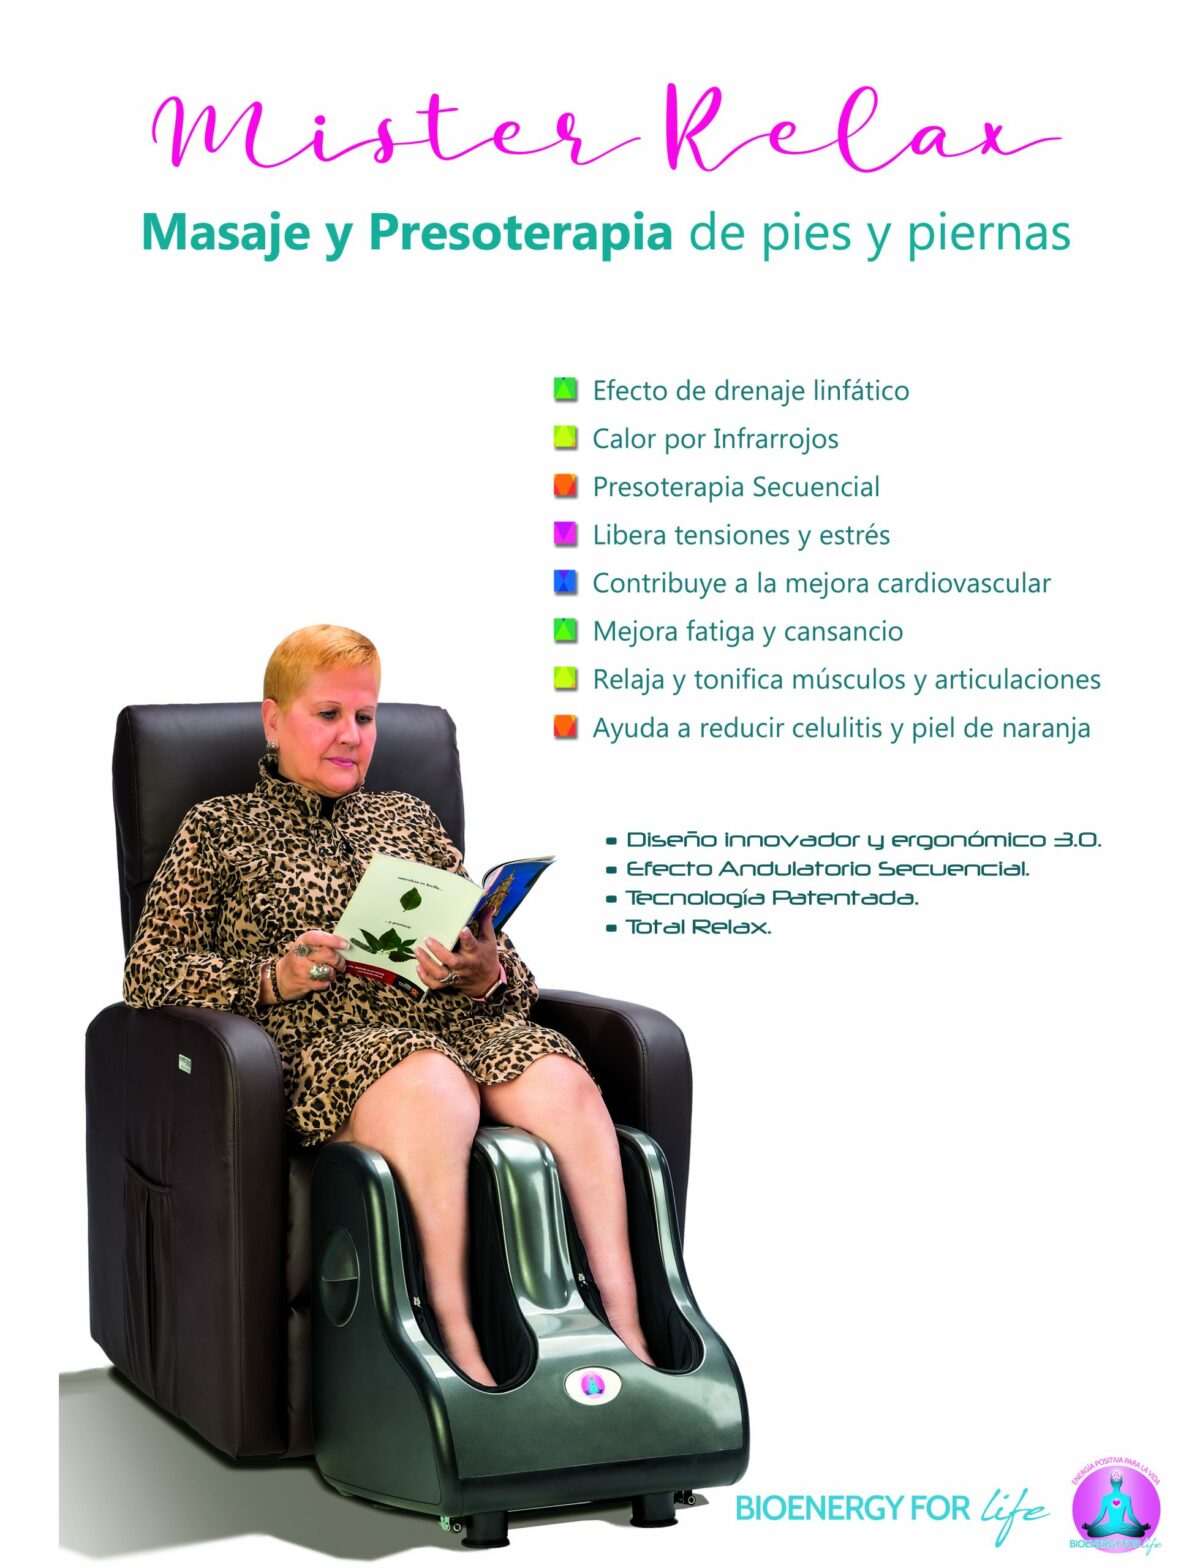 Masaje y Presoterapia de pies y piernas